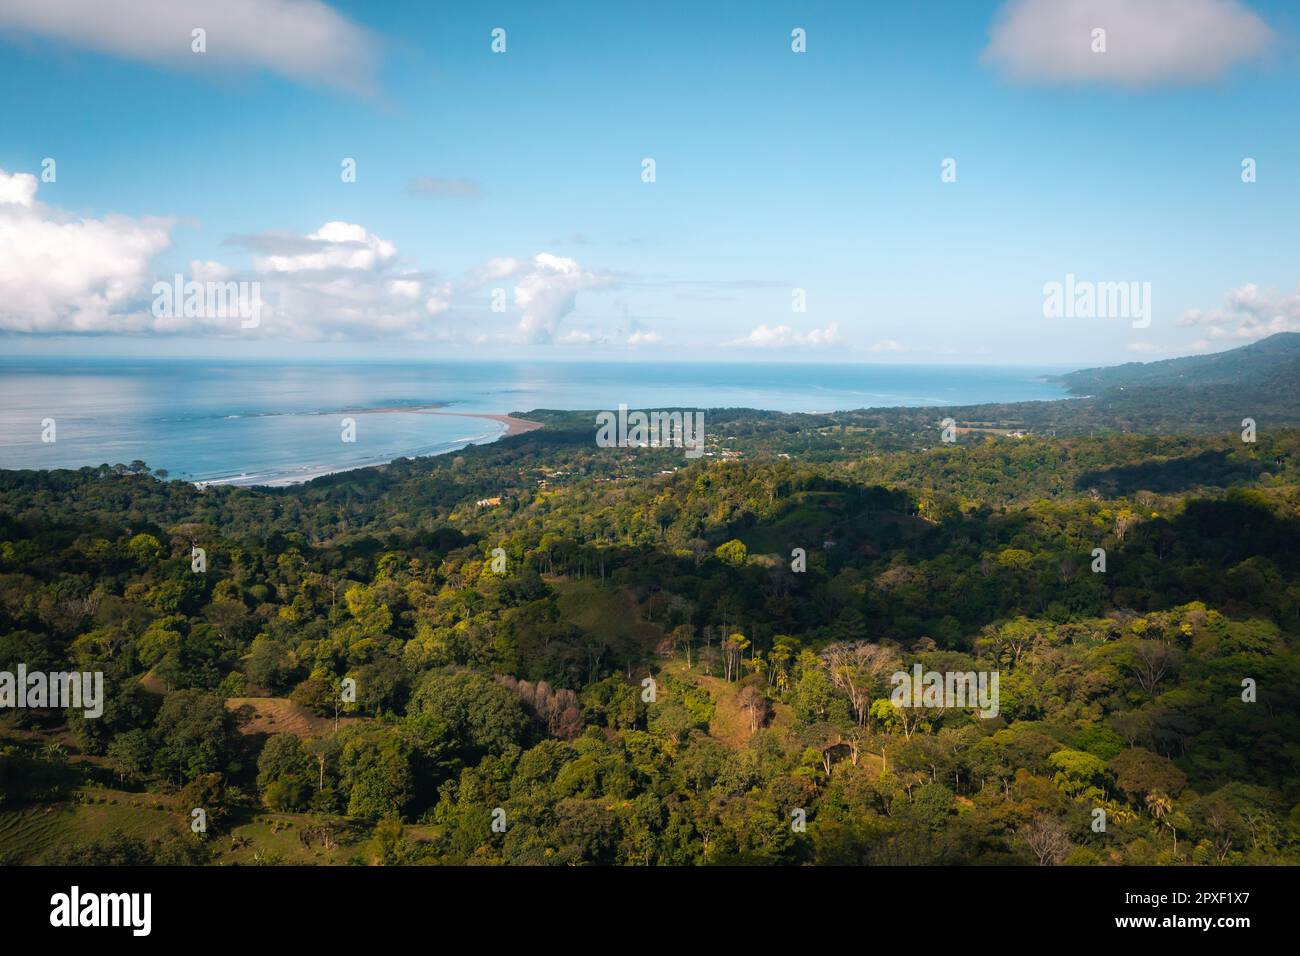 Vista aerea di un paesaggio mozzafiato in Costa Rica, Colombia, con lussureggianti alberi verdi e colline ondulate Foto Stock